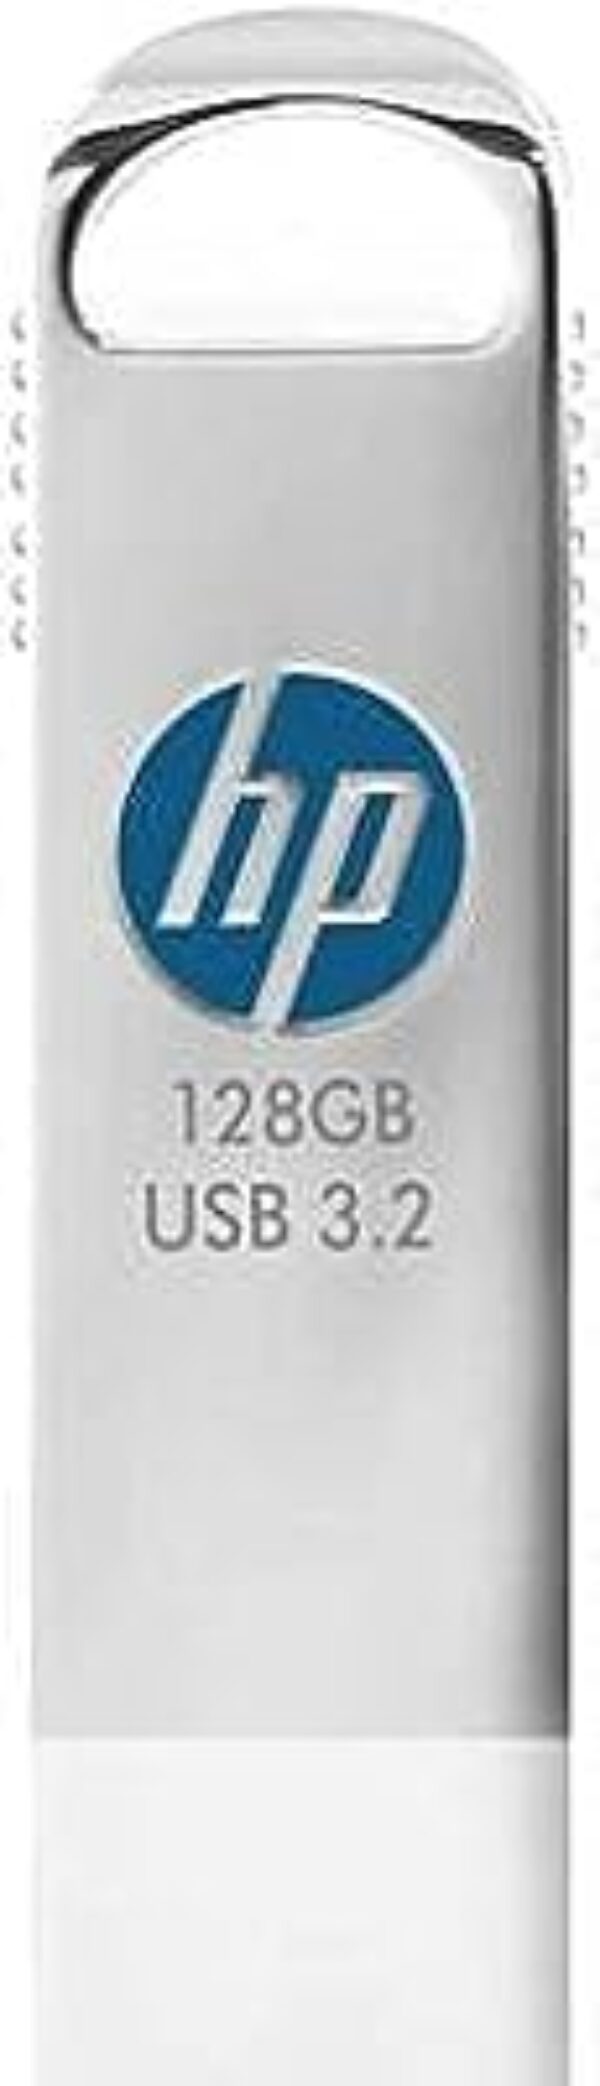 HP x306w 128GB USB 3.2 Pen Drive